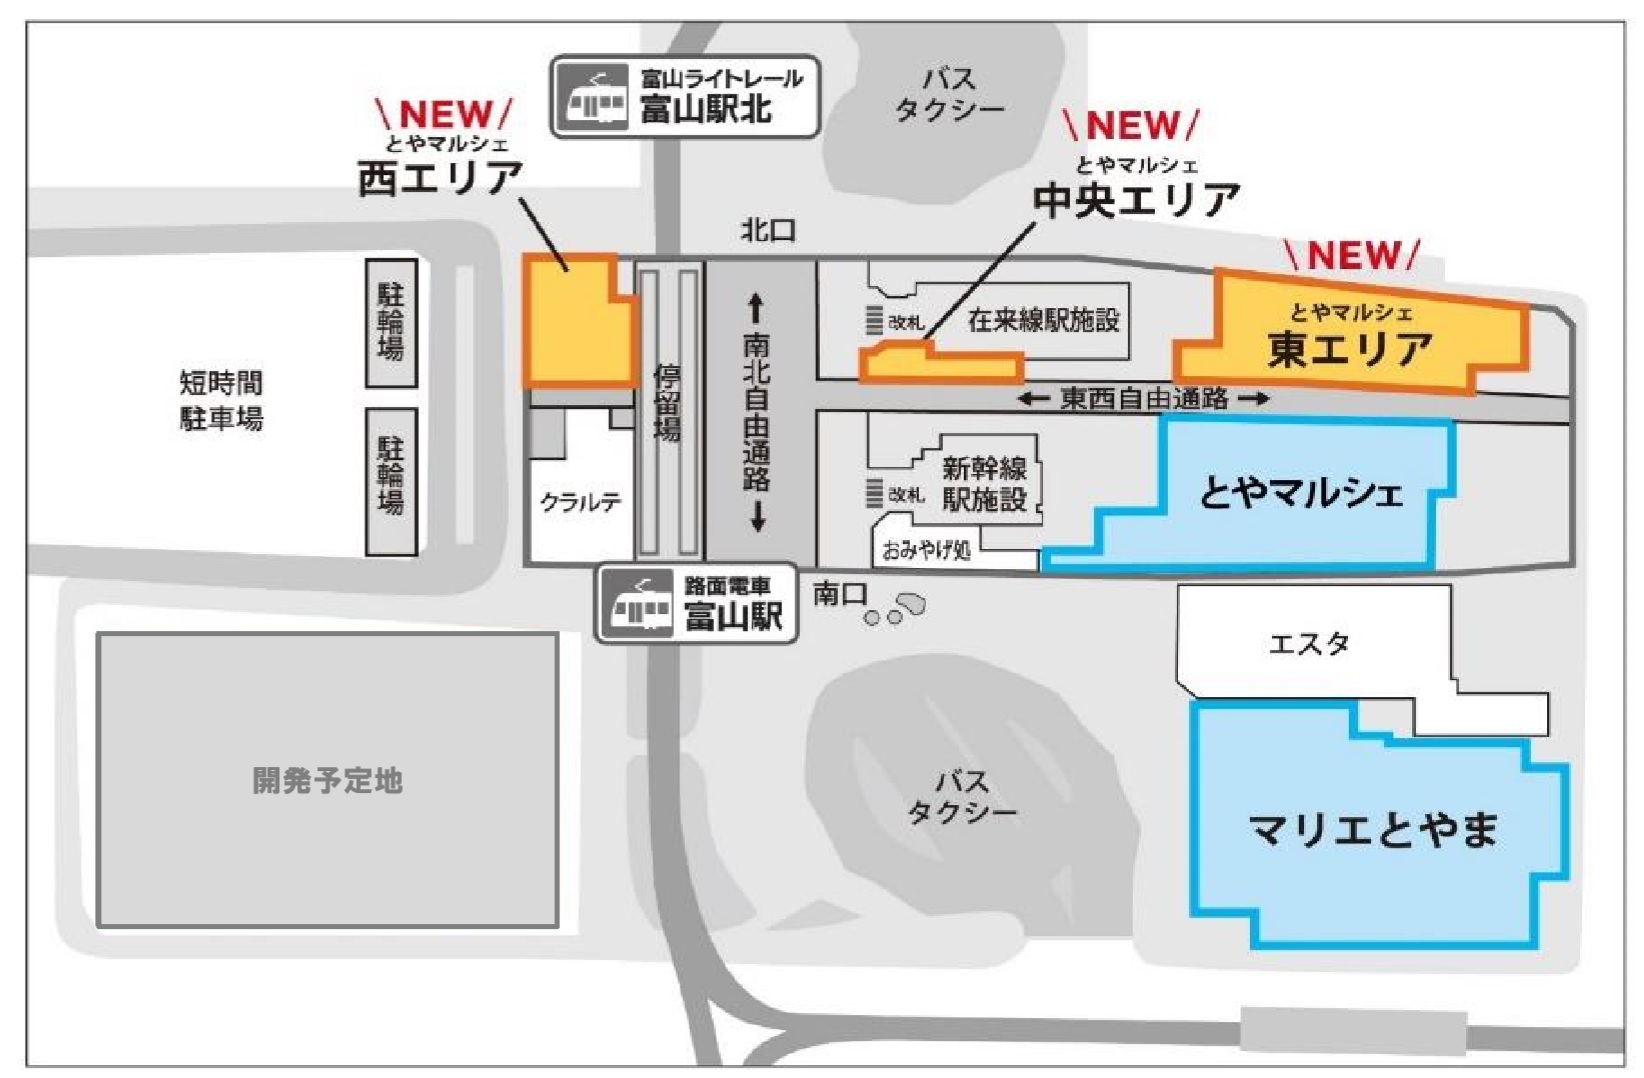 富山駅周辺の新商業店舗